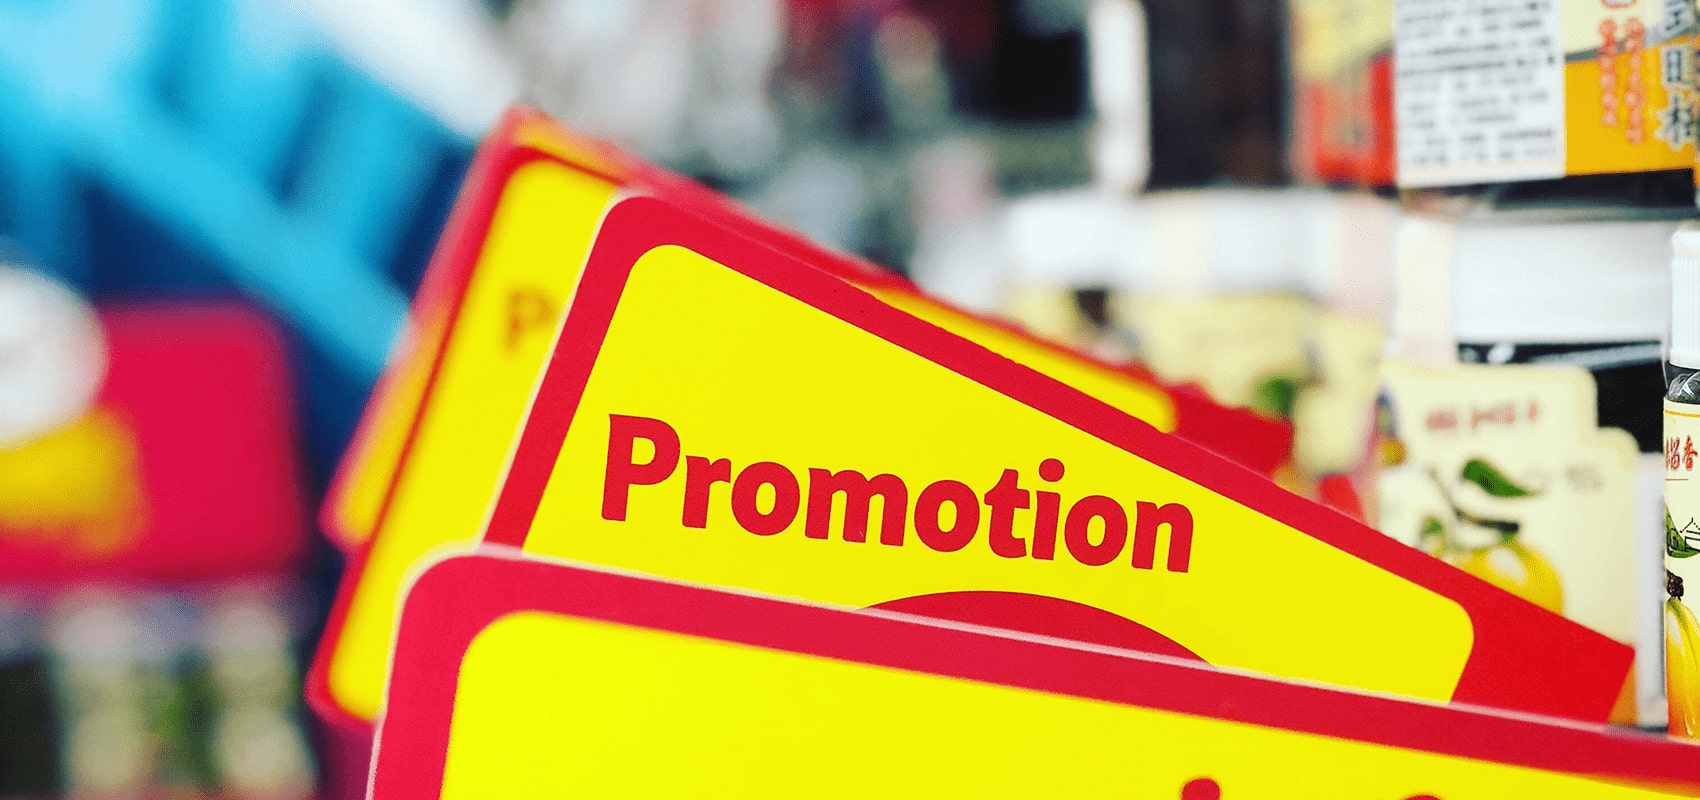 Placas amarelas com bordas vermelhas escrito Promotion